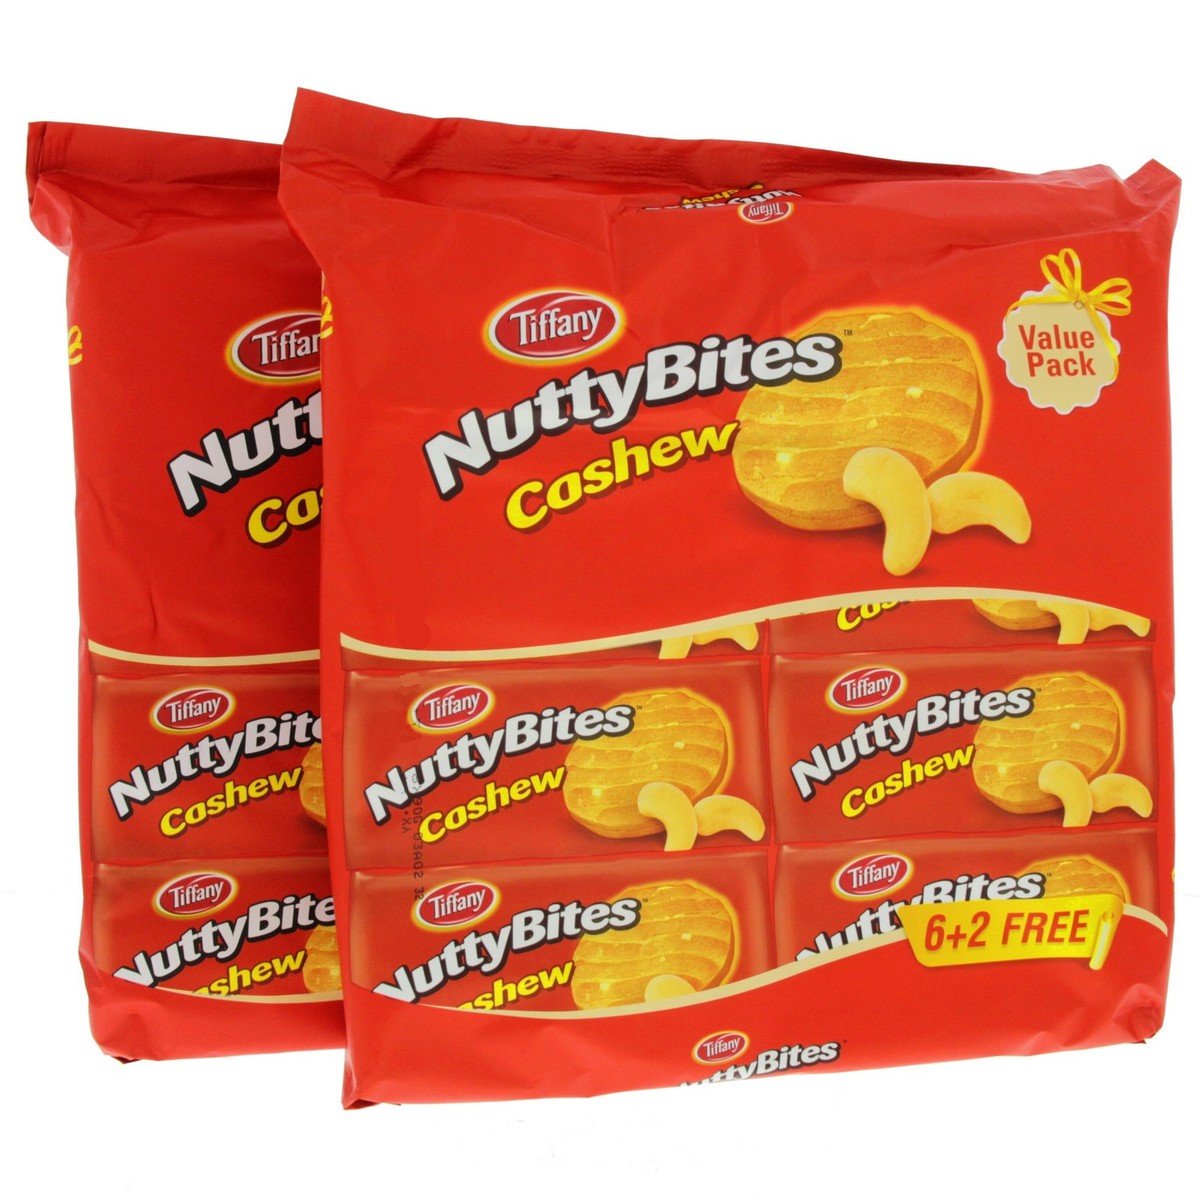 Tiffany Nutty Bites Cashew 8 x 90g 2pkt